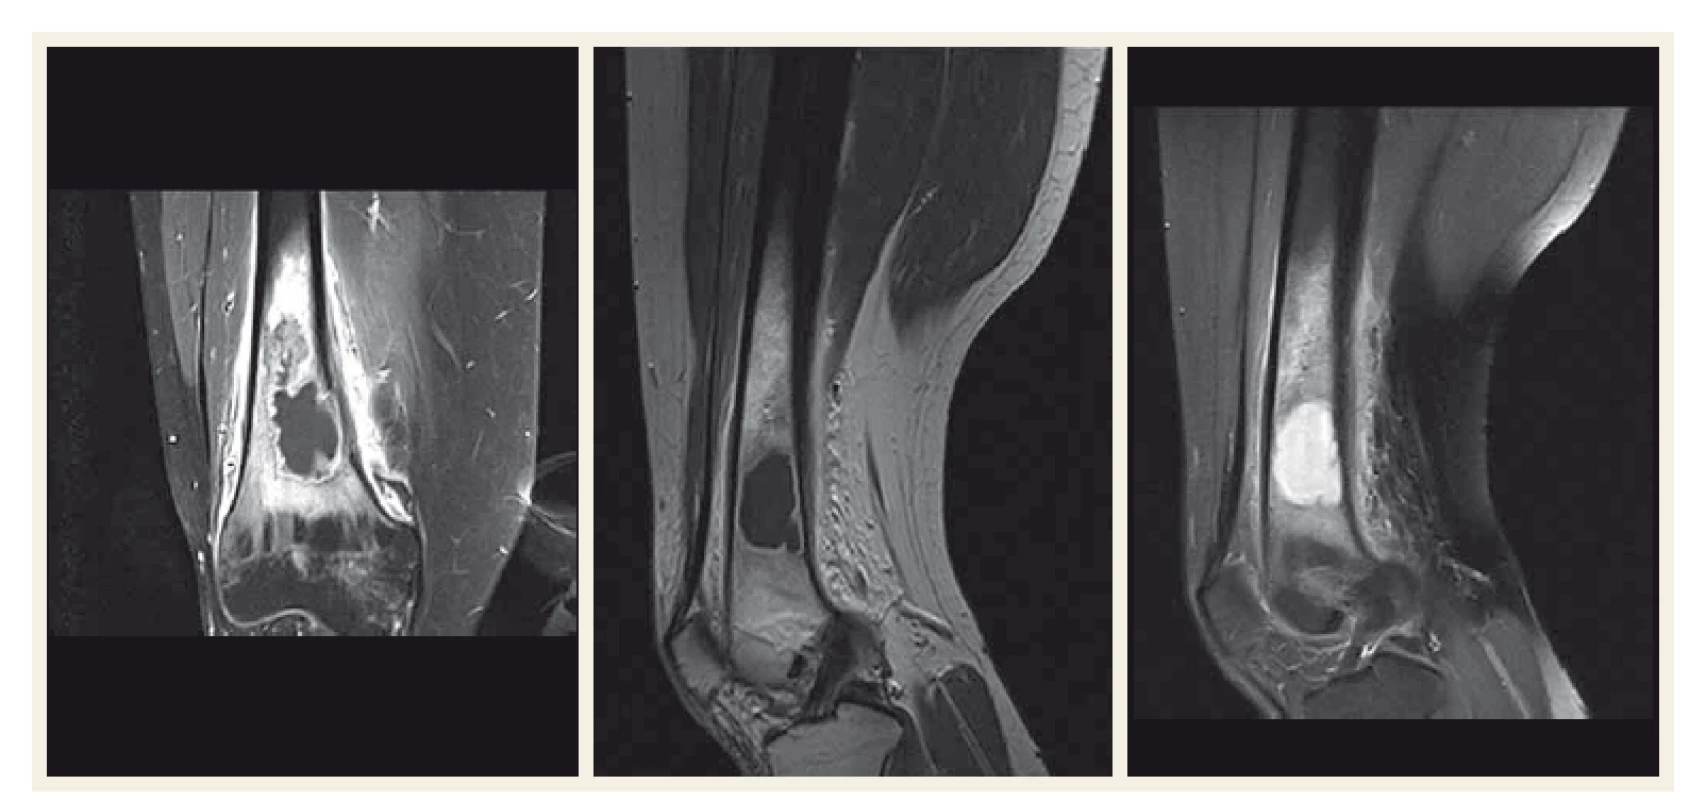 Magnetická rezonance distální diafýzy femuru a pravého kolenního kloubu.